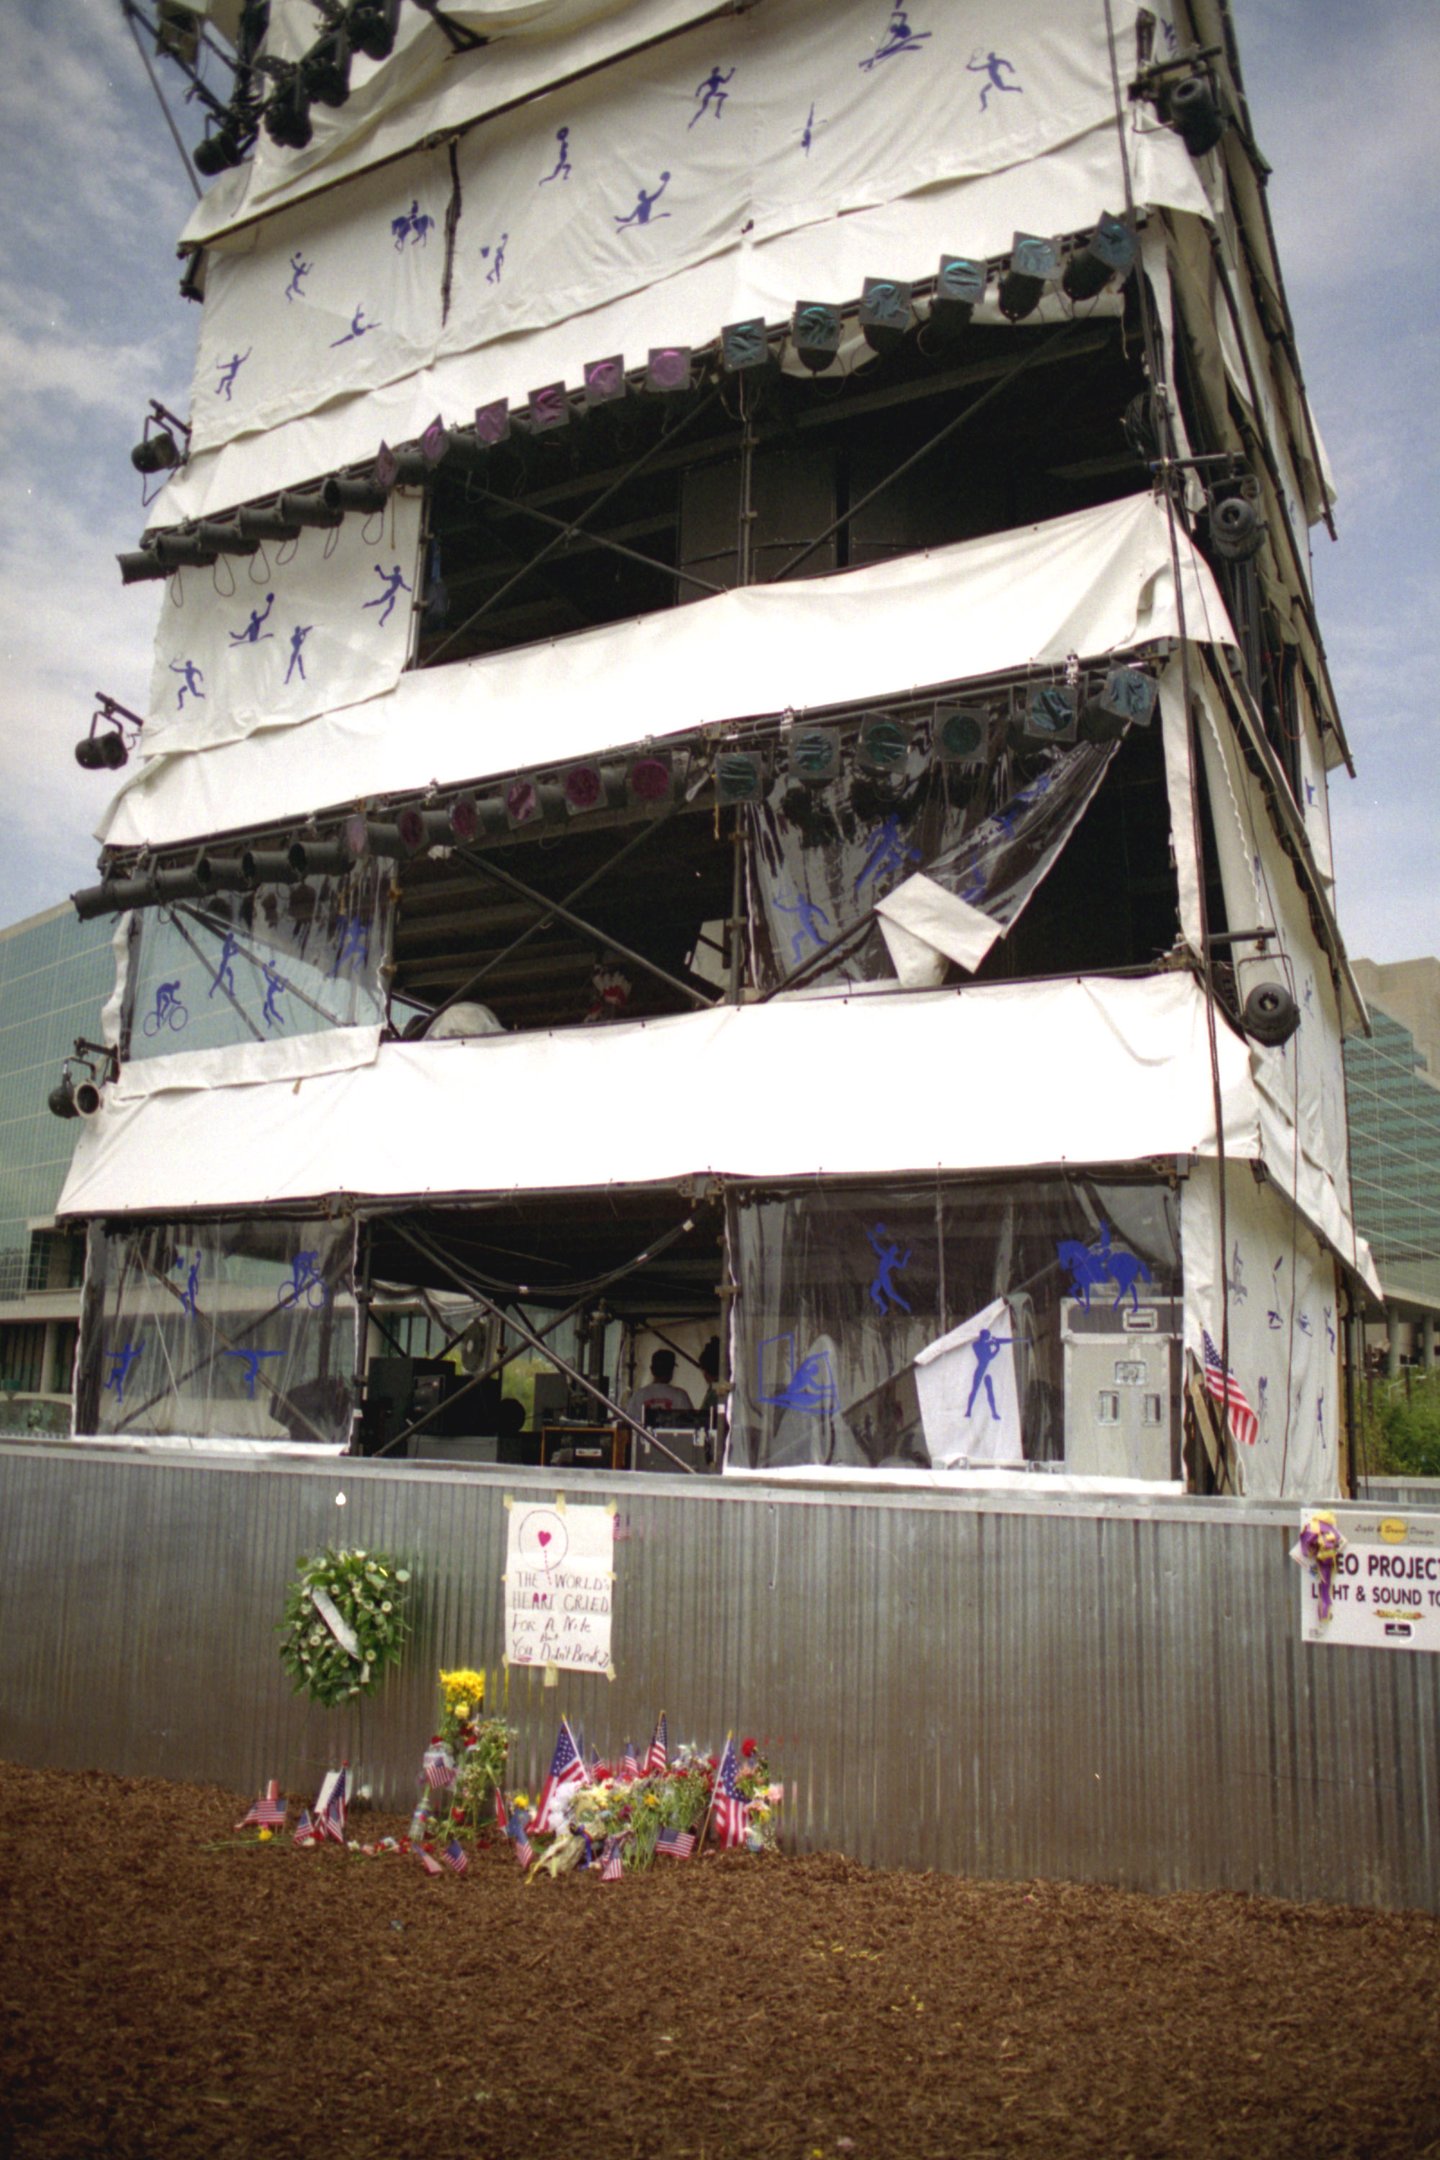 O local da bomba, junto da torre de som (Imagem: Wikimedia Commons)